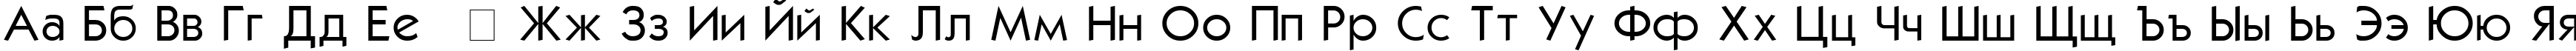 Пример написания русского алфавита шрифтом Kabel